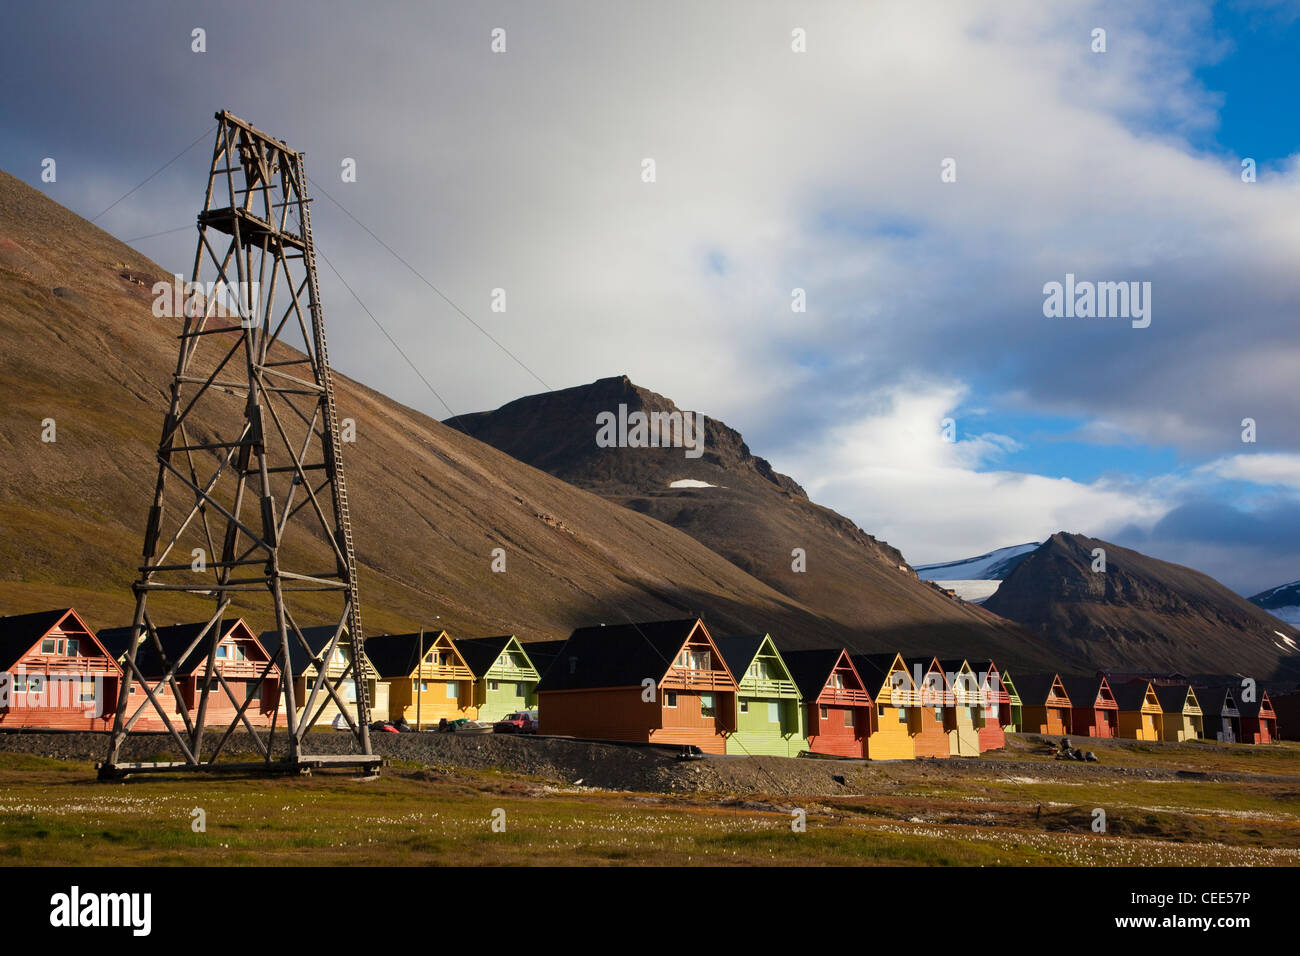 Maisons en bois à Longyearbyen, la plus grande colonie de l'archipel du Svalbard, Norvège. Banque D'Images